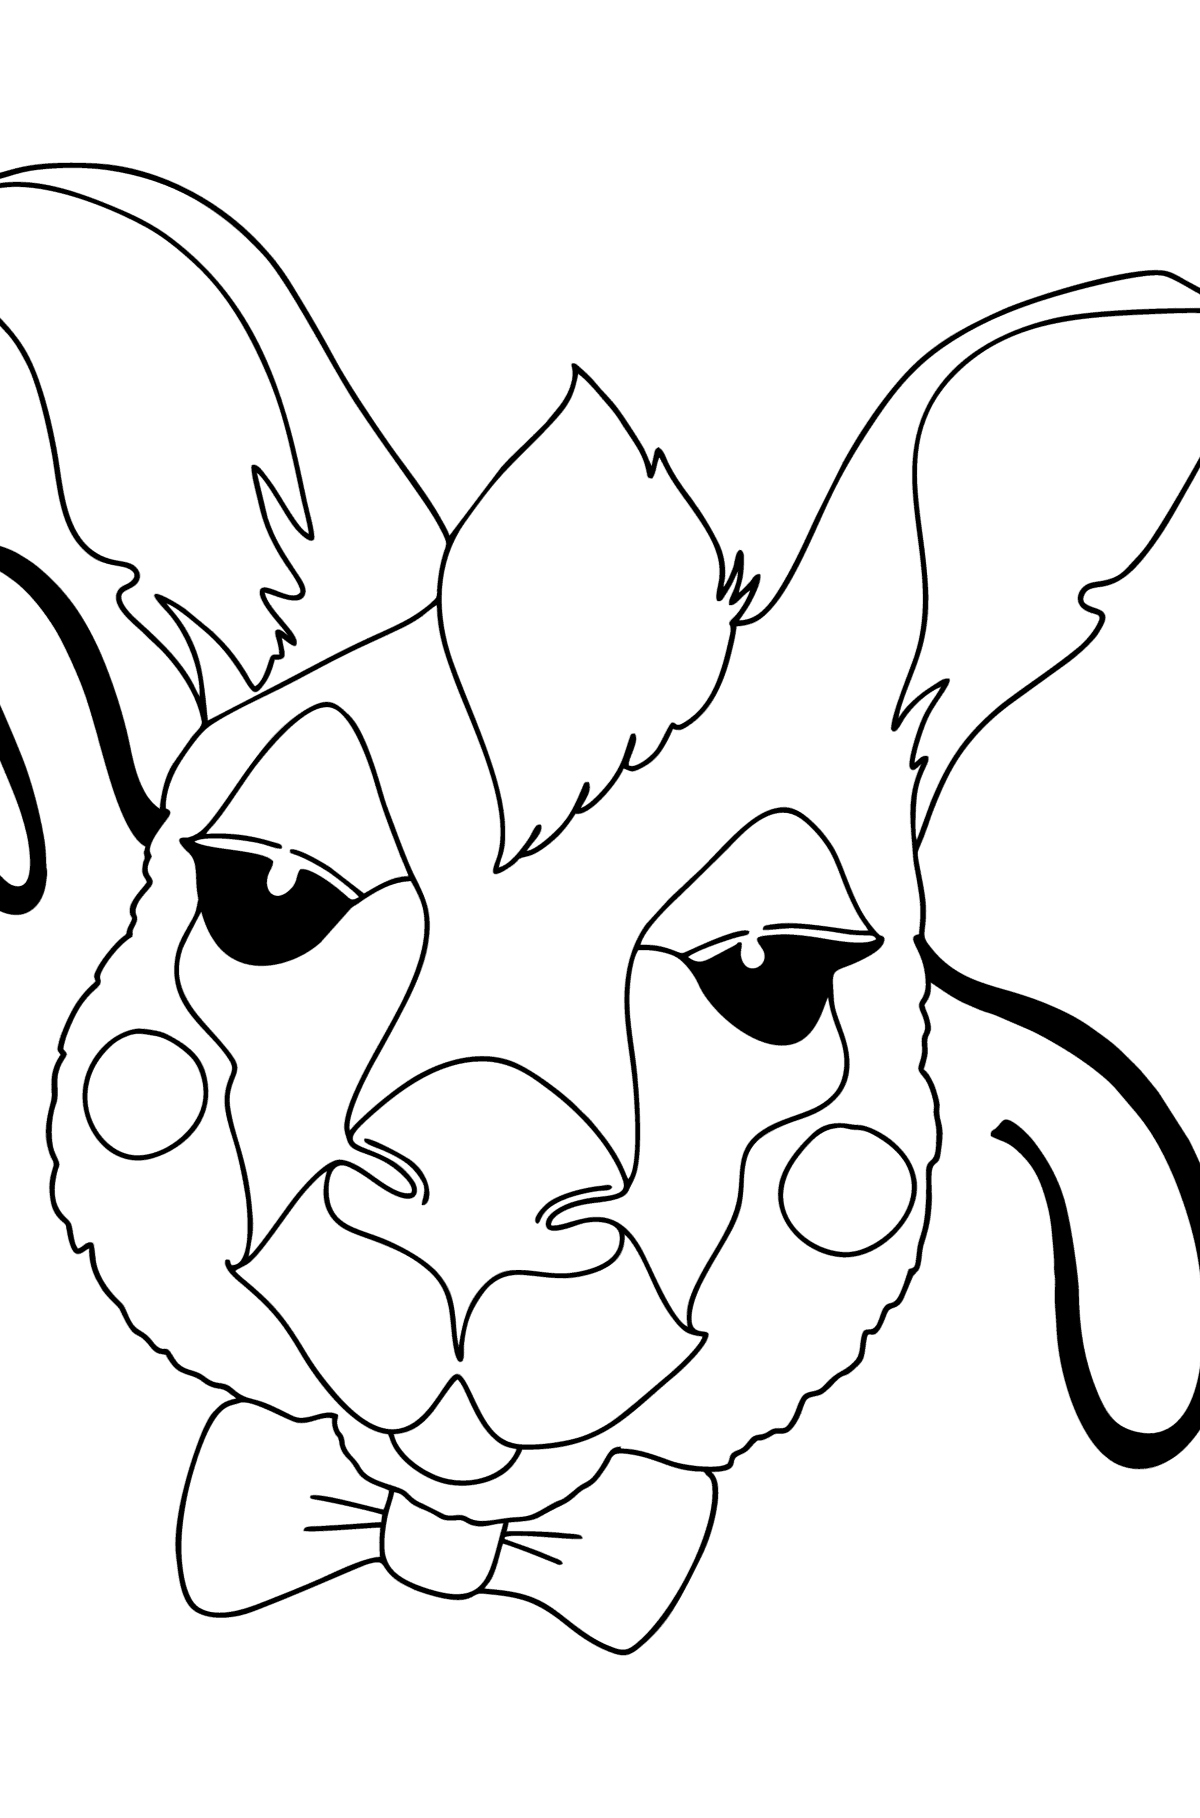 Tegning til fargelegging kenguru maske - Tegninger til fargelegging for barn